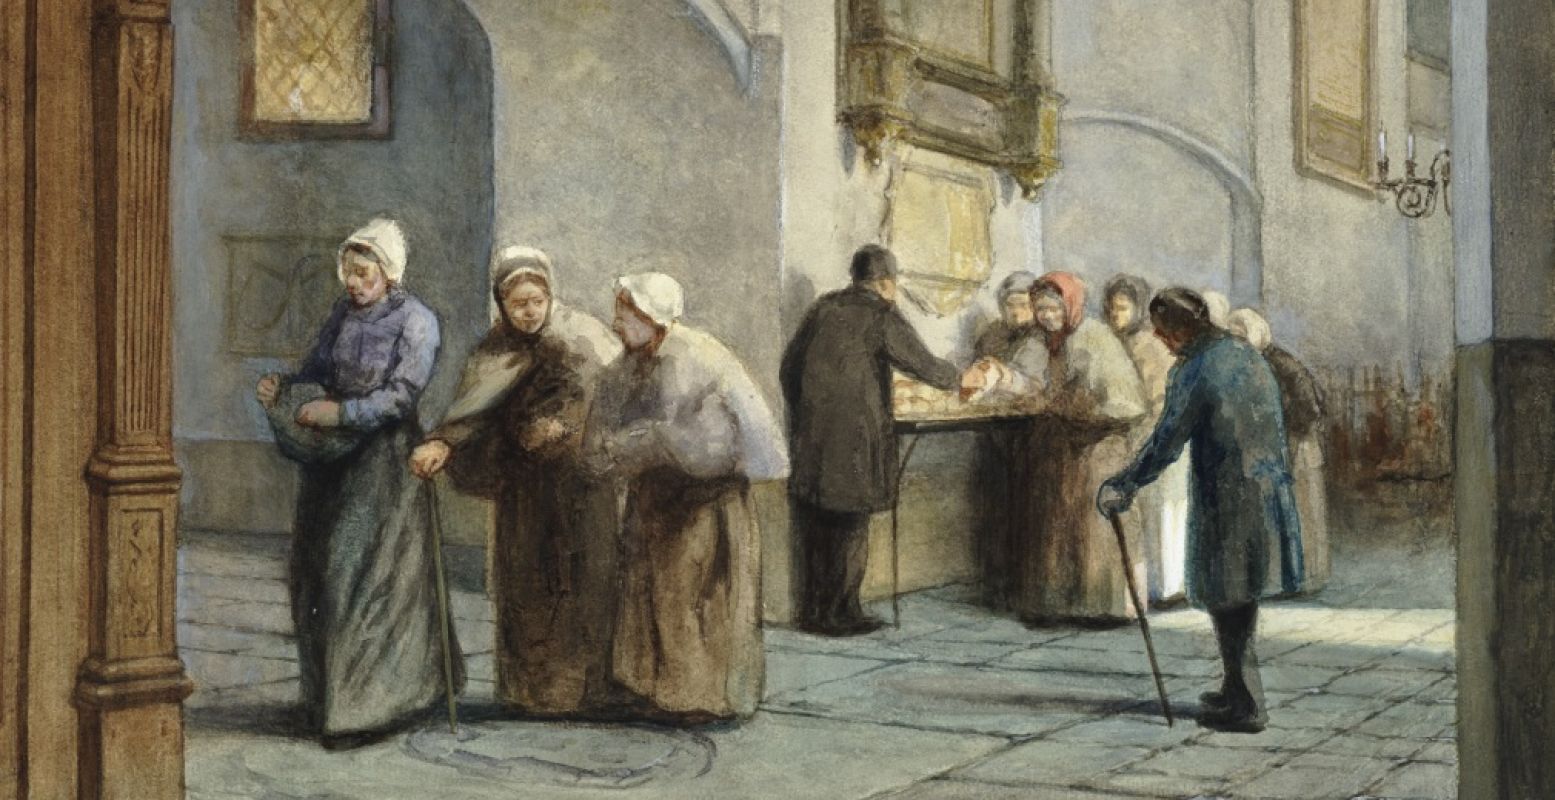 Uitdeling van brood aan de armen in de Buurkerk te Utrecht. Foto: Museum Speelklok, Jozef Hoevenaar, ca. 1880, Acquarel, Utrechts Archief.